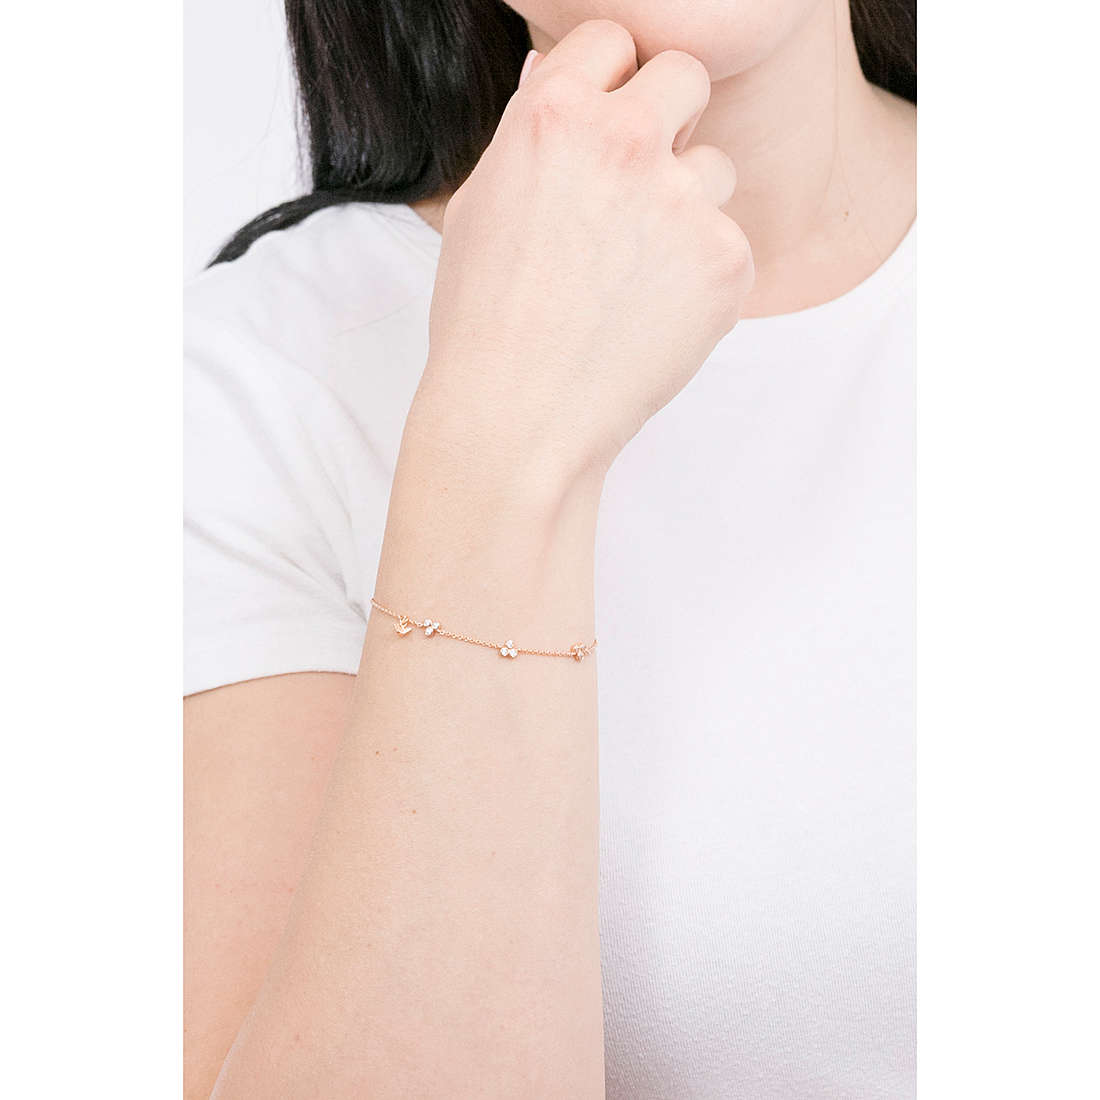 Emporio Armani bracelets woman EG3483221 wearing